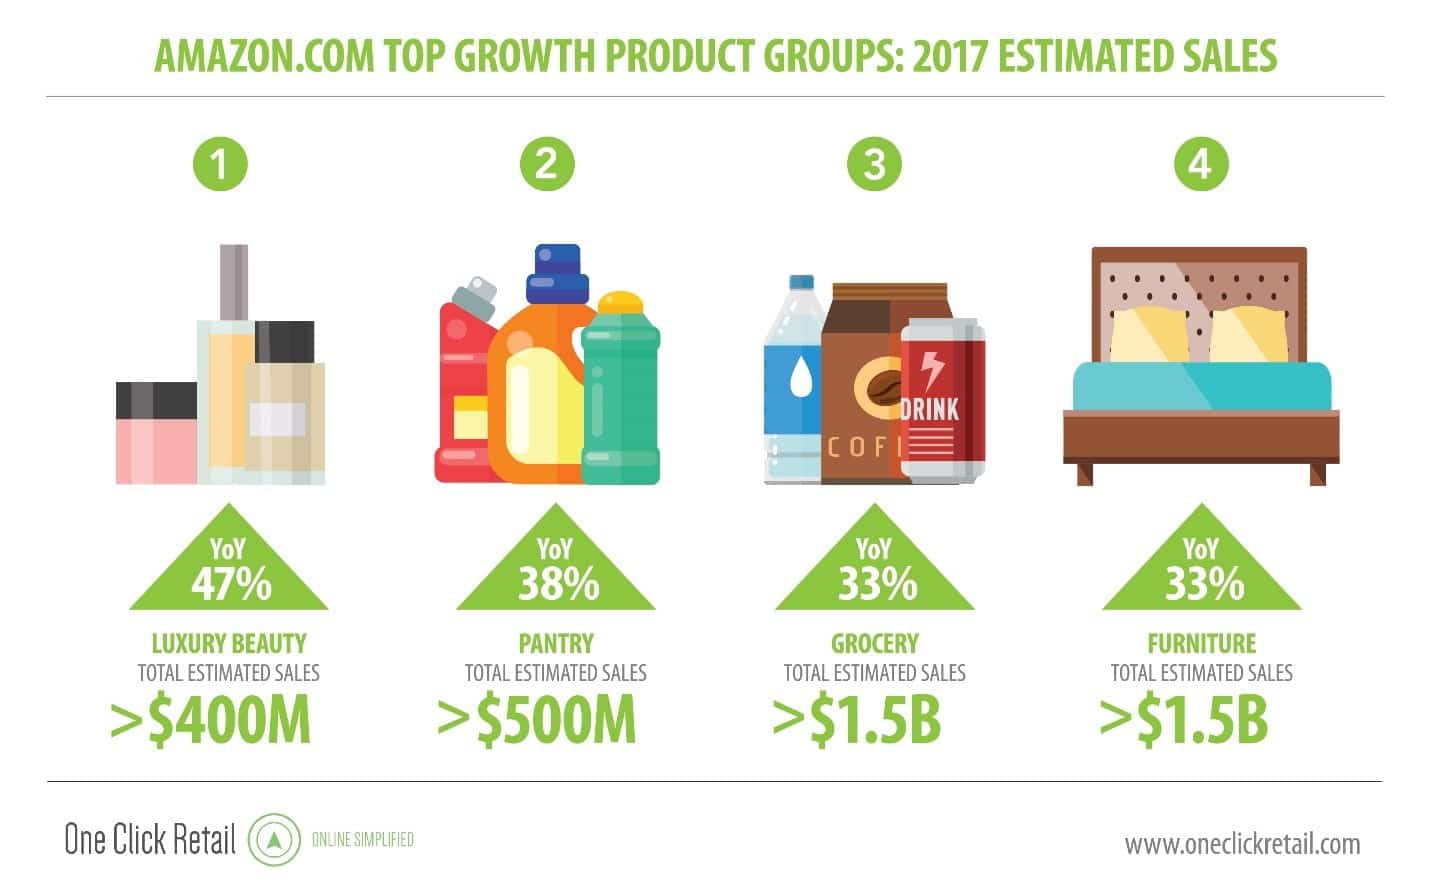 Les produits Amazon à forte croissance